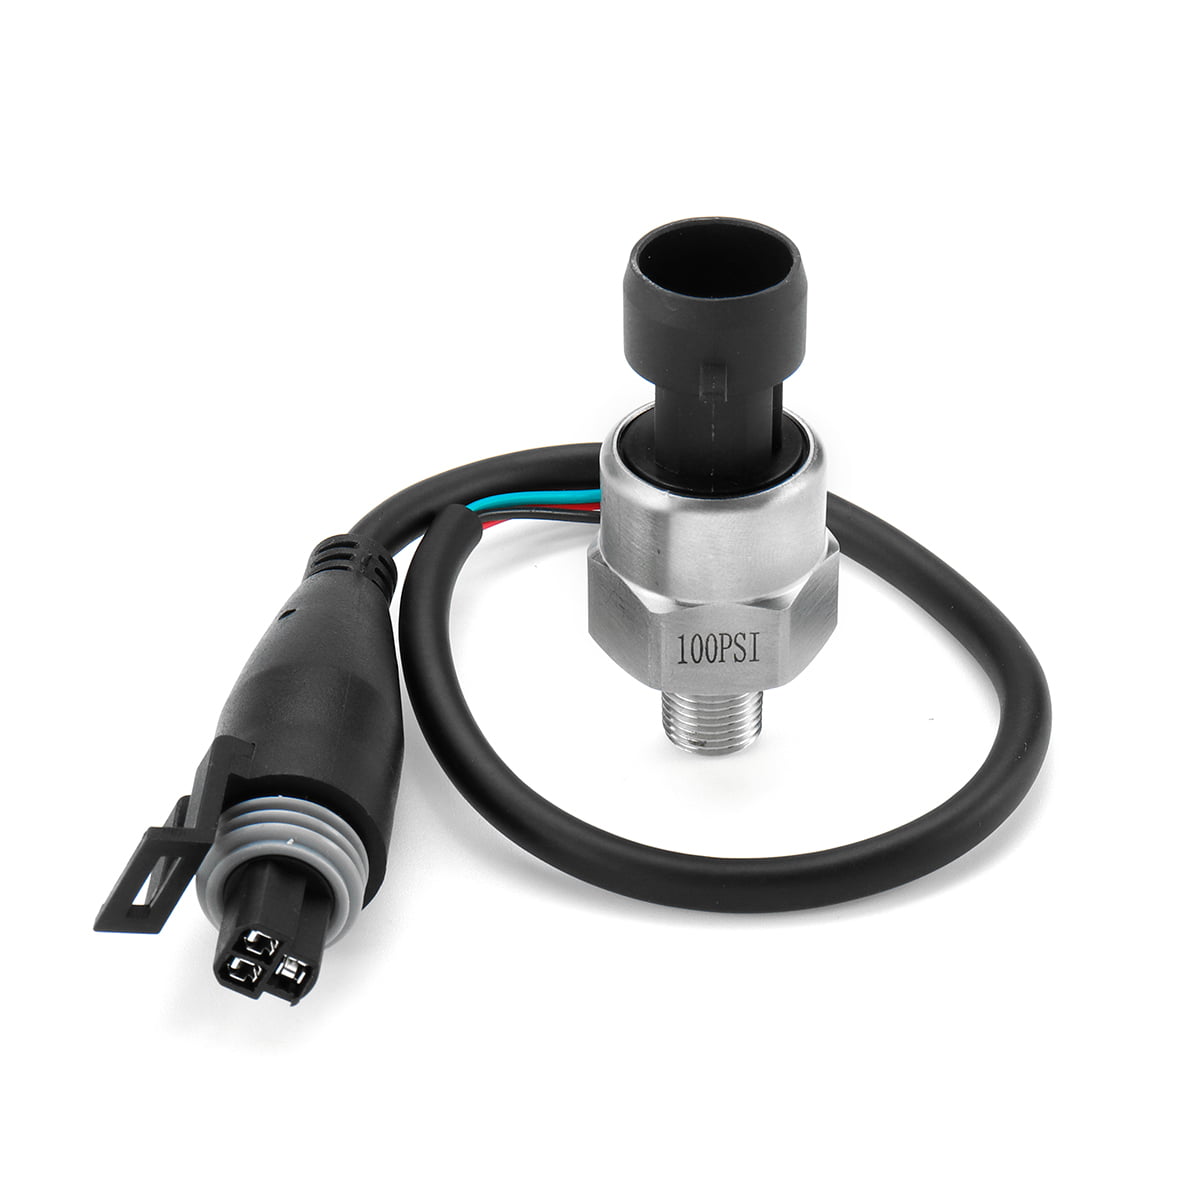 3120円 世界有名な 15 PSI Universal 5v Pressure Transducer Sender Sensor with Wiring Connector